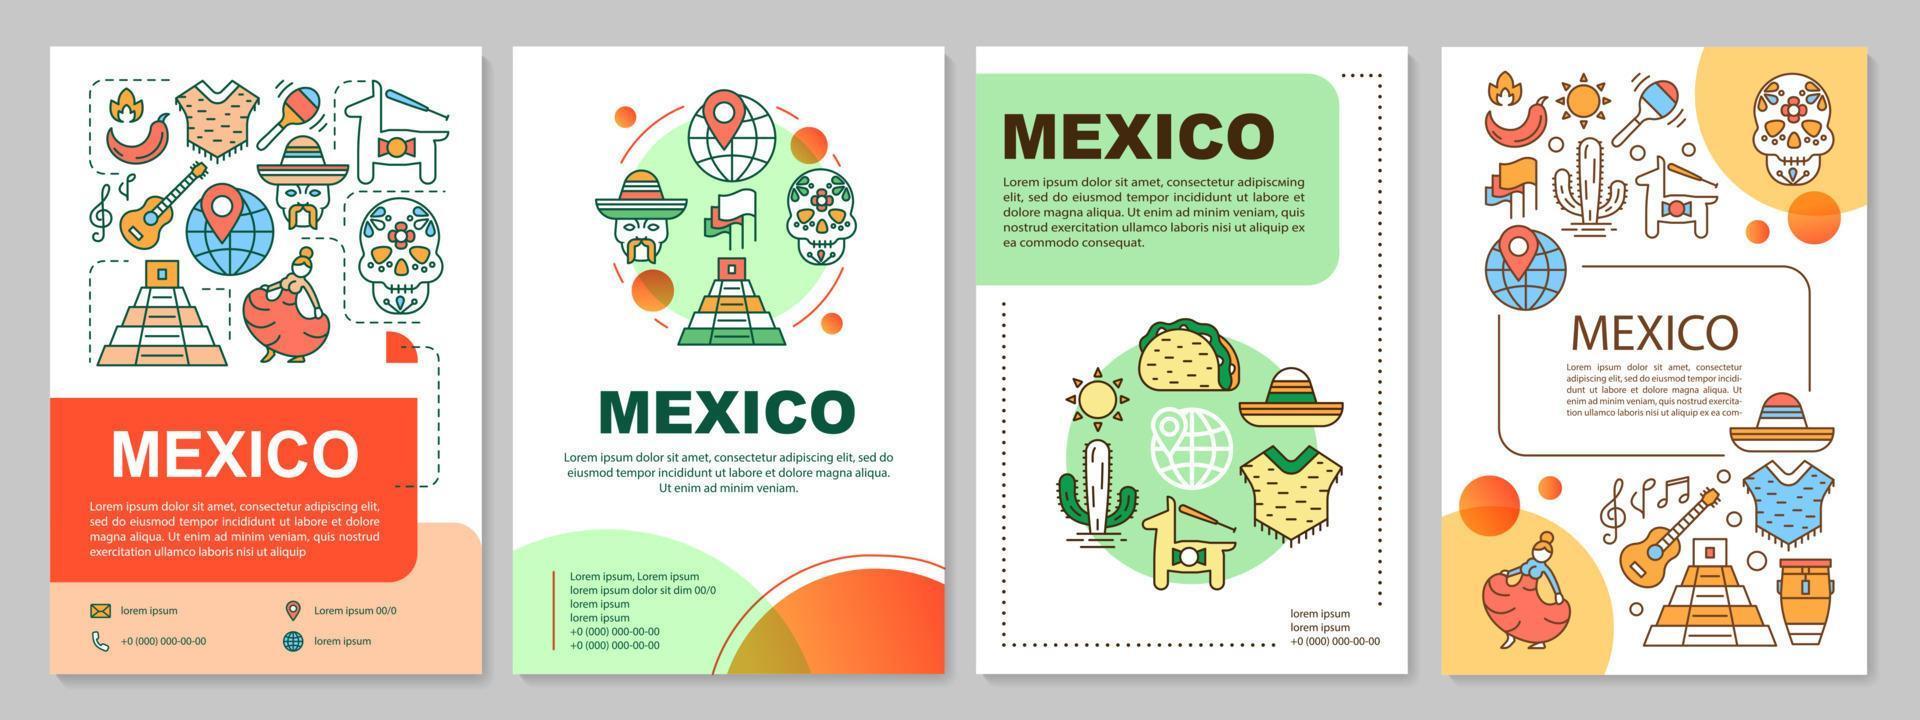 Mexiko broschyr mall layout. mexikansk kultur och attraktioner. flygblad, häfte, broschyrtryckdesign med linjära illustrationer. vektor sidlayouter för tidskrifter, årsredovisningar, reklamaffischer